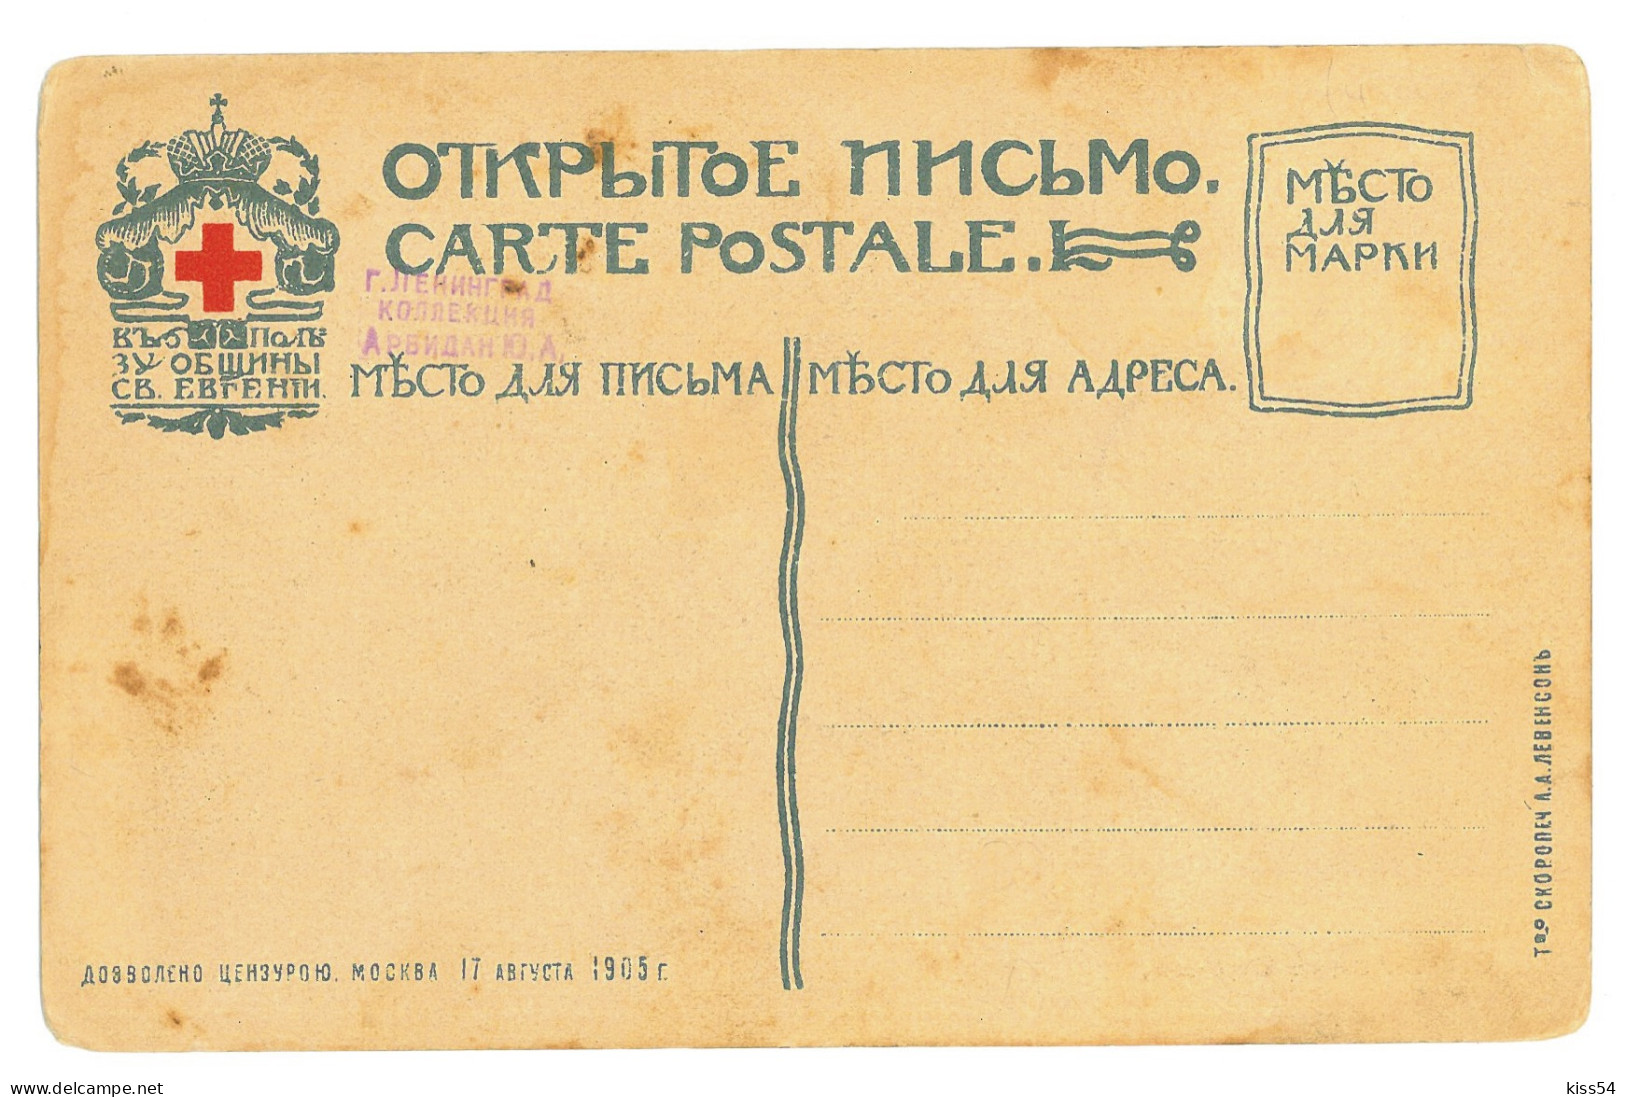 RUS 00 - 17926 OMSK, Russia - Old Postcard - Unused - 1905 - Russland